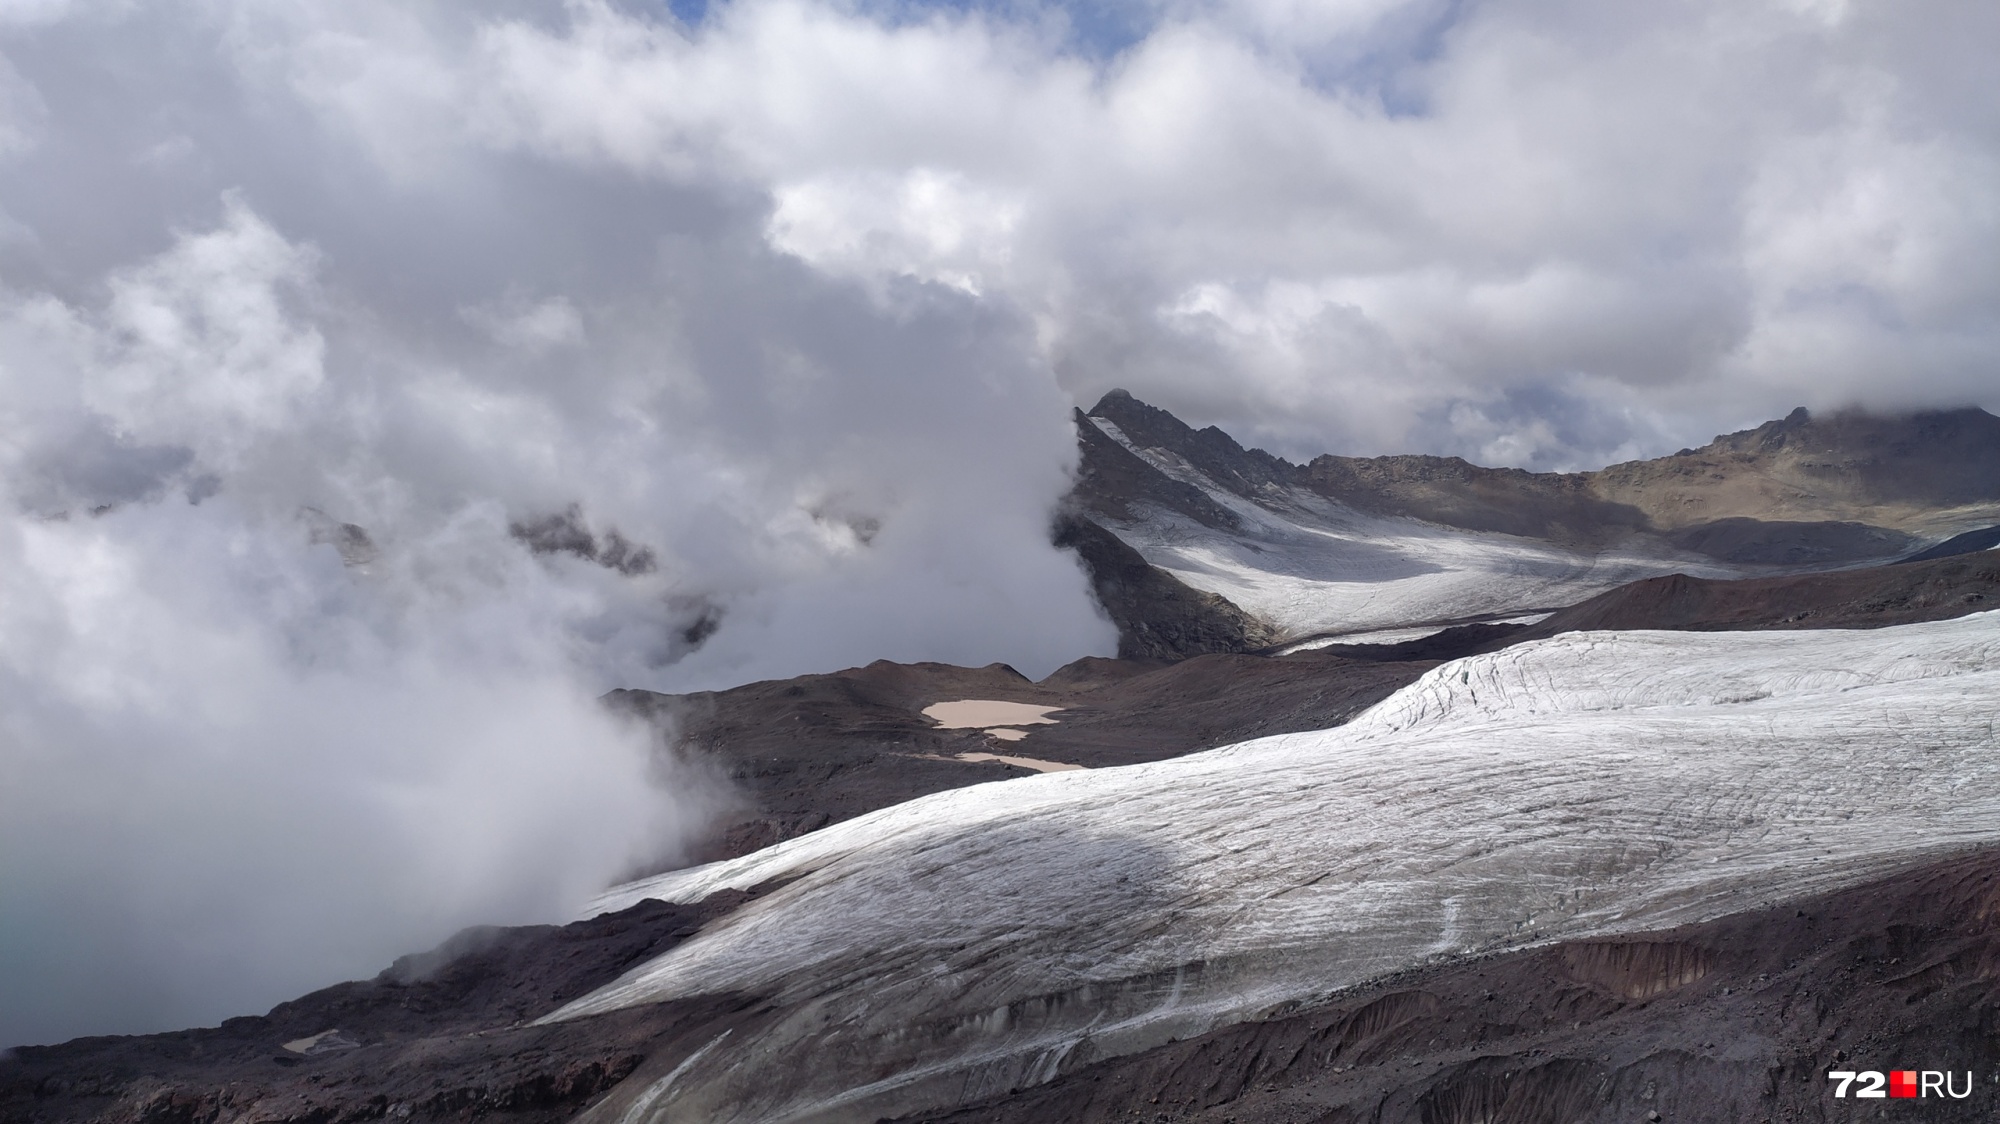 Вид со станции «Мир» на Эльбрусе, высота 3500 метров над уровнем моря